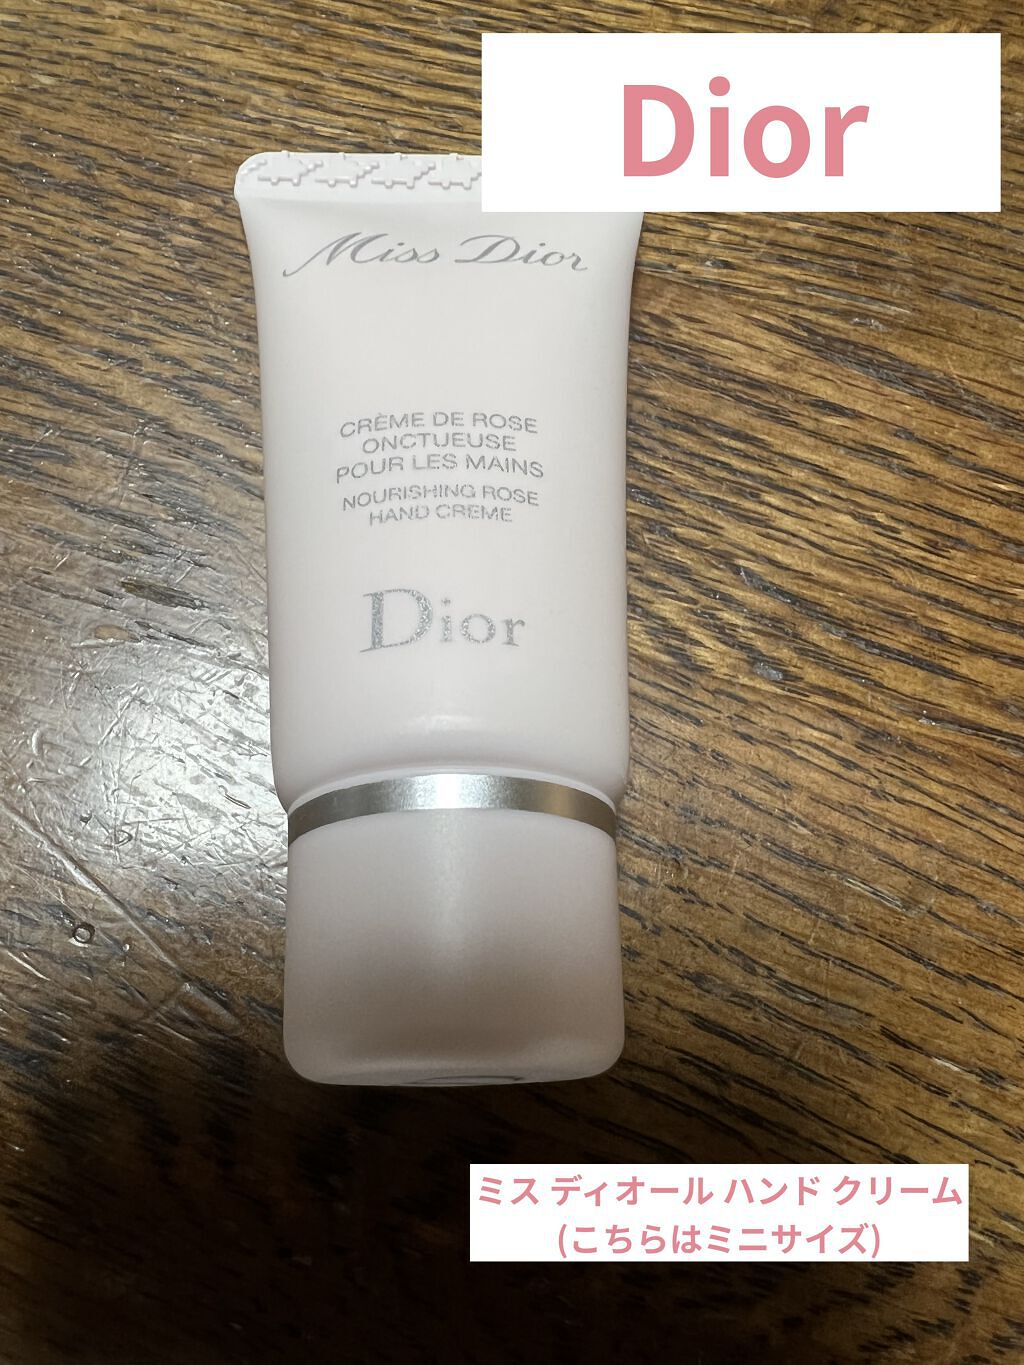 SALE／60%OFF】Dior ハンドクリーム ディオル ハンドクリーム